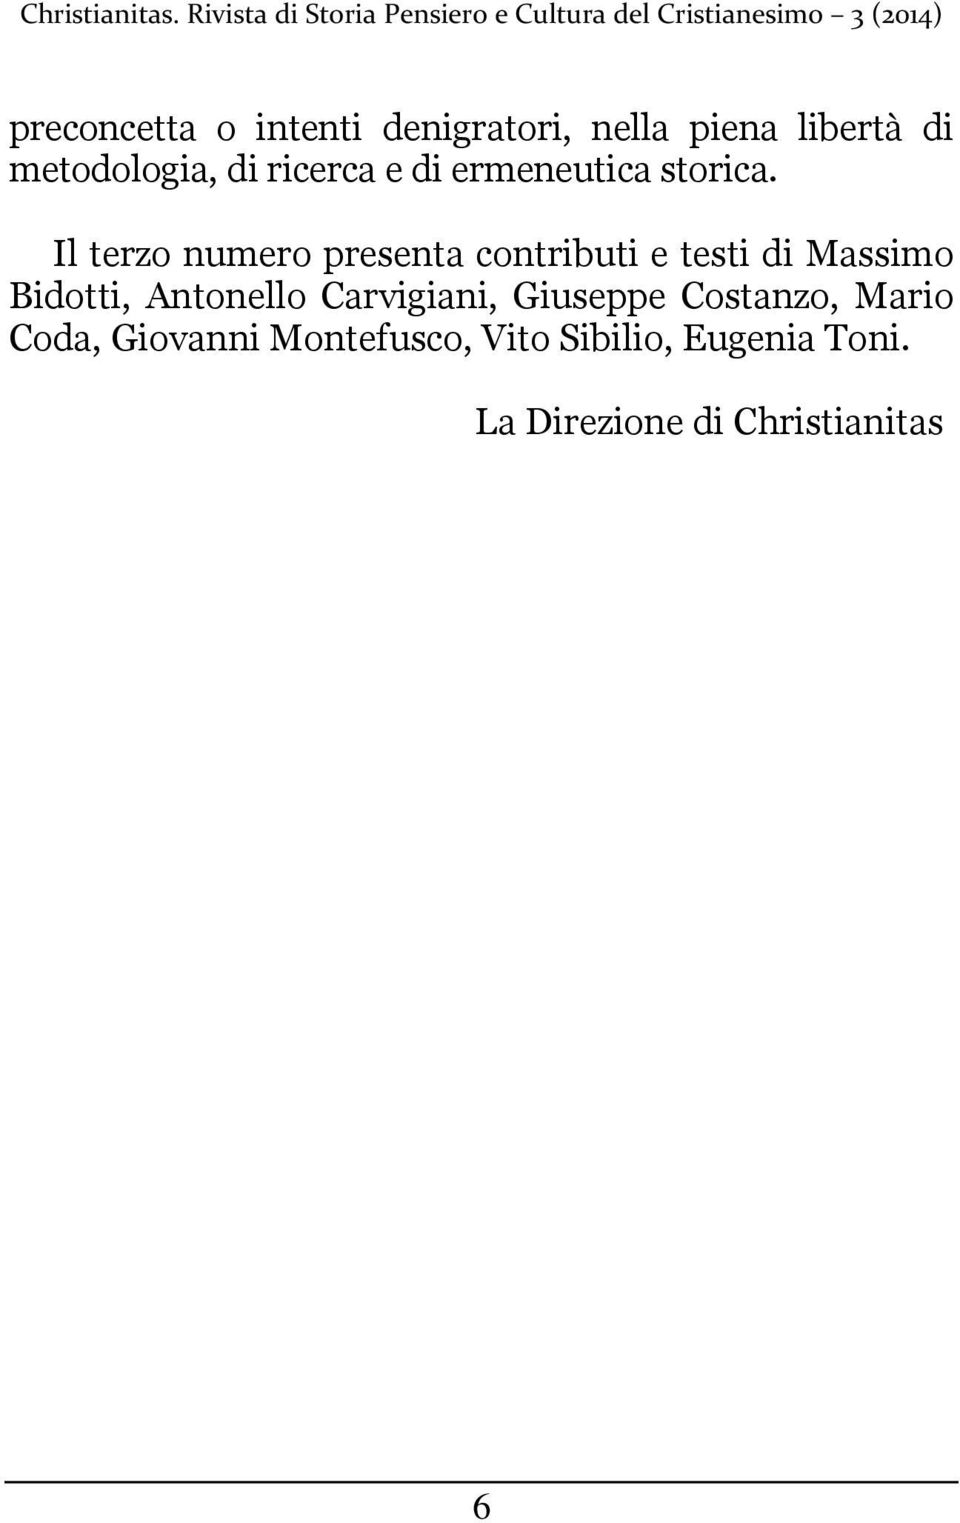 Il terzo numero presenta contributi e testi di Massimo Bidotti, Antonello